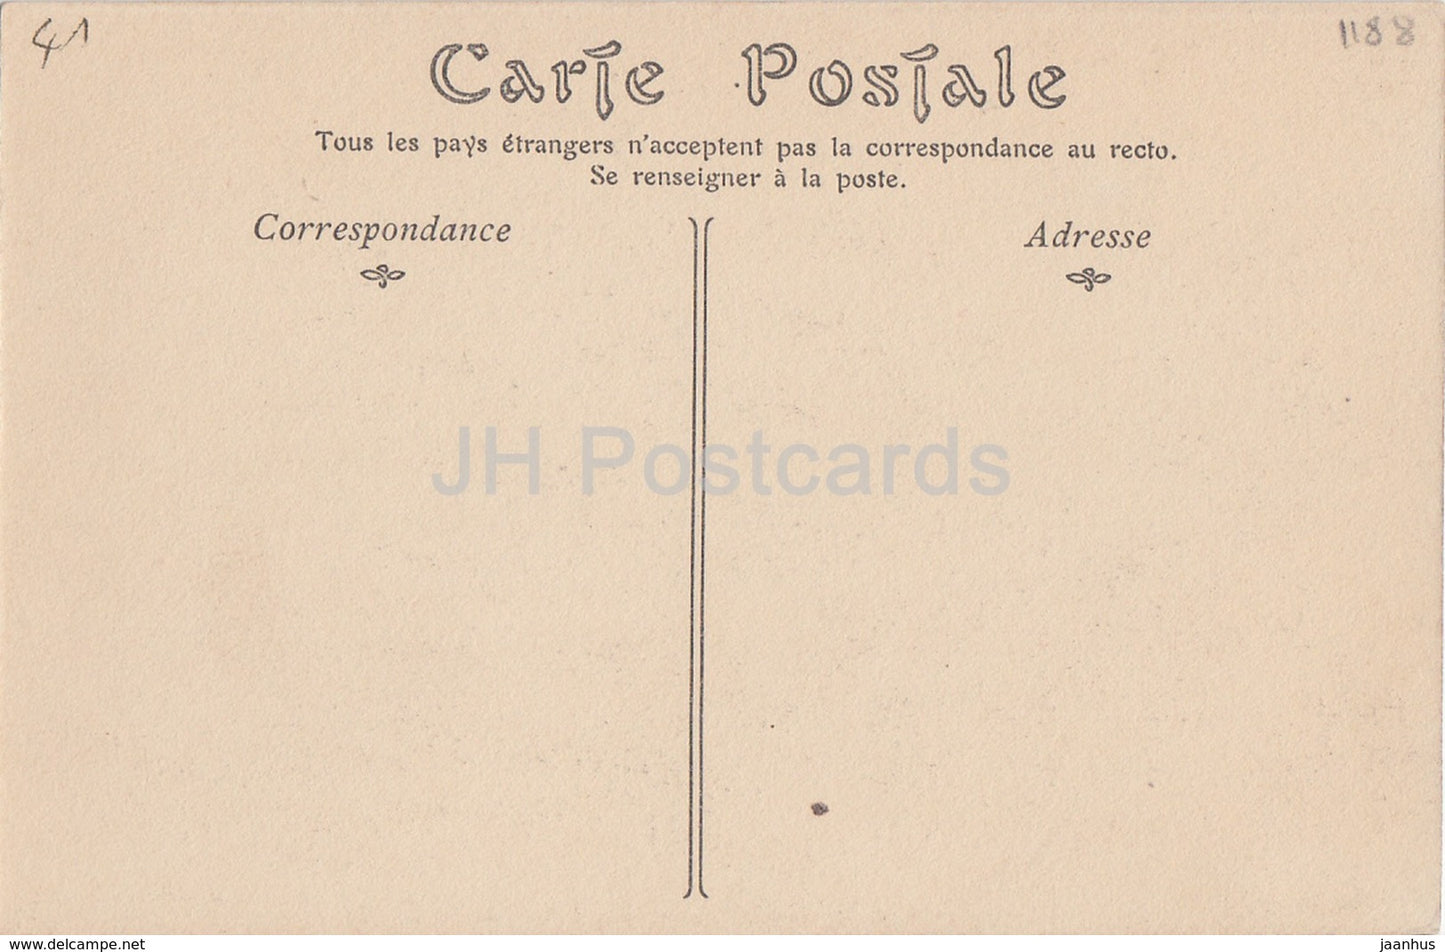 Montoire sur le Loir - Chateau - castle ruins - 41 - old postcard - France - unused